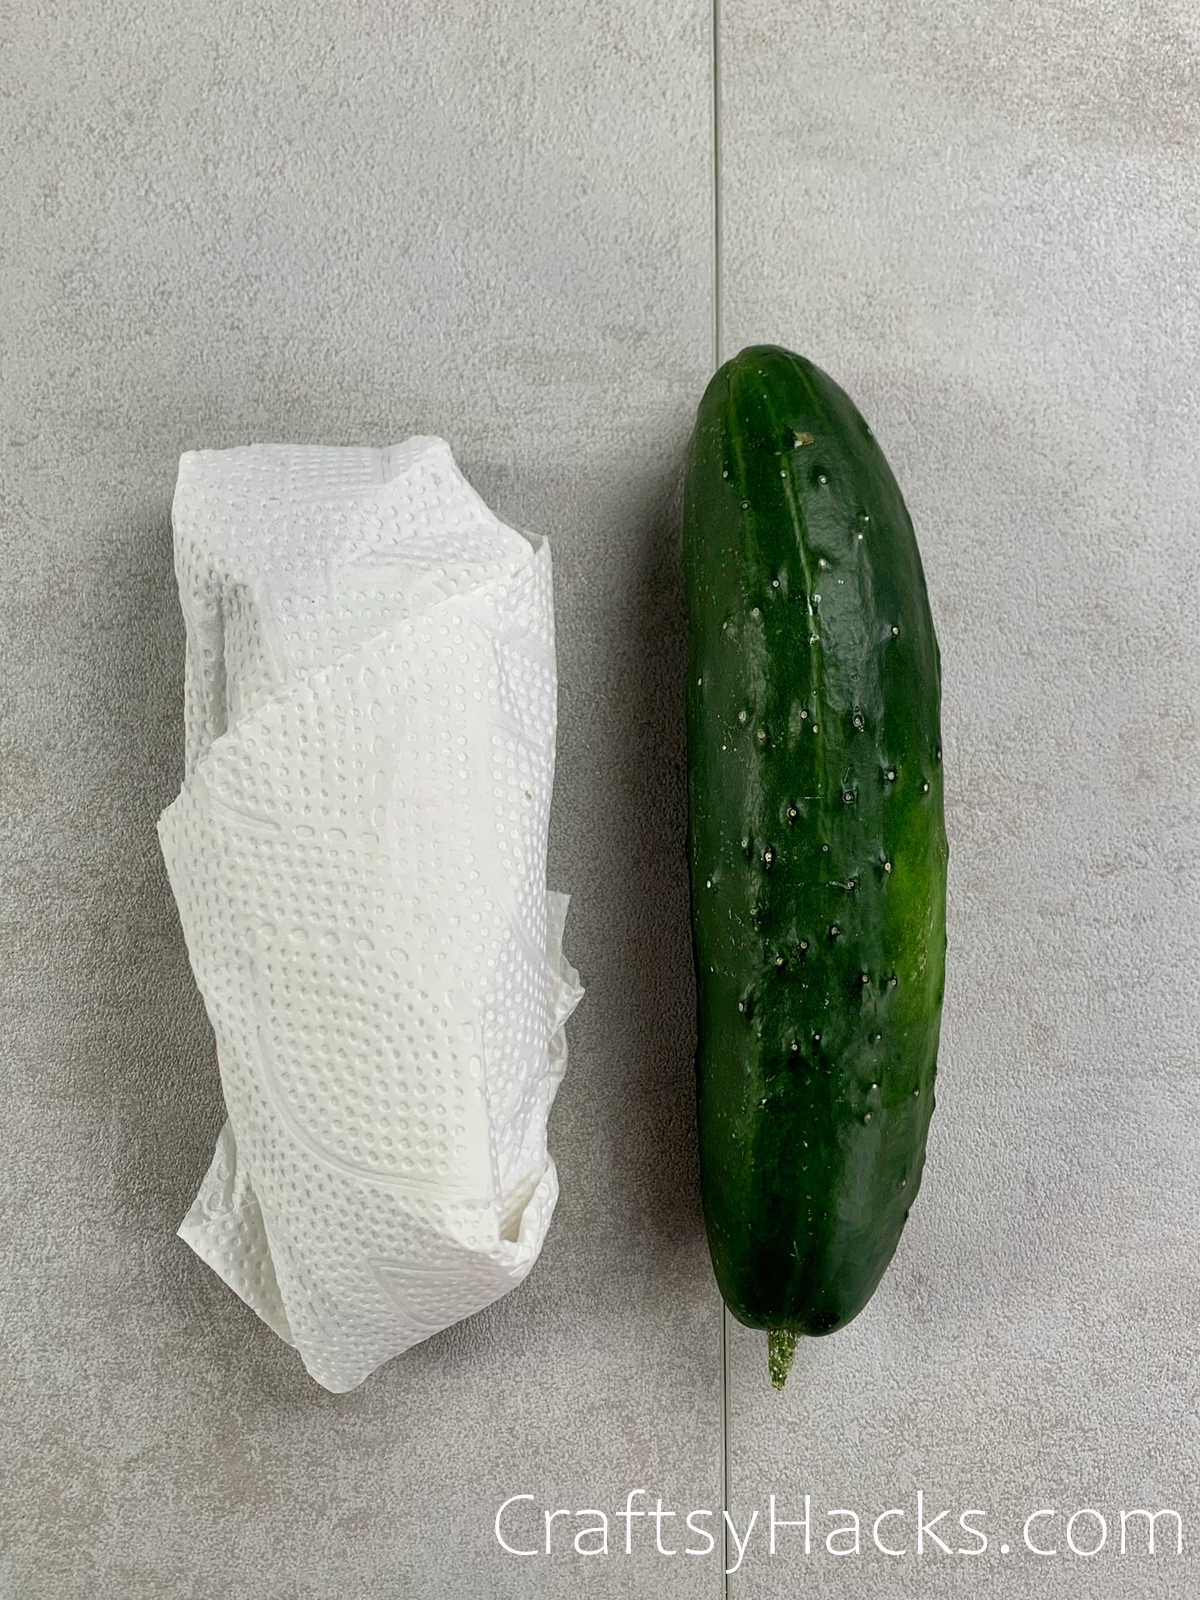 wrap cucumbers in a paper towel